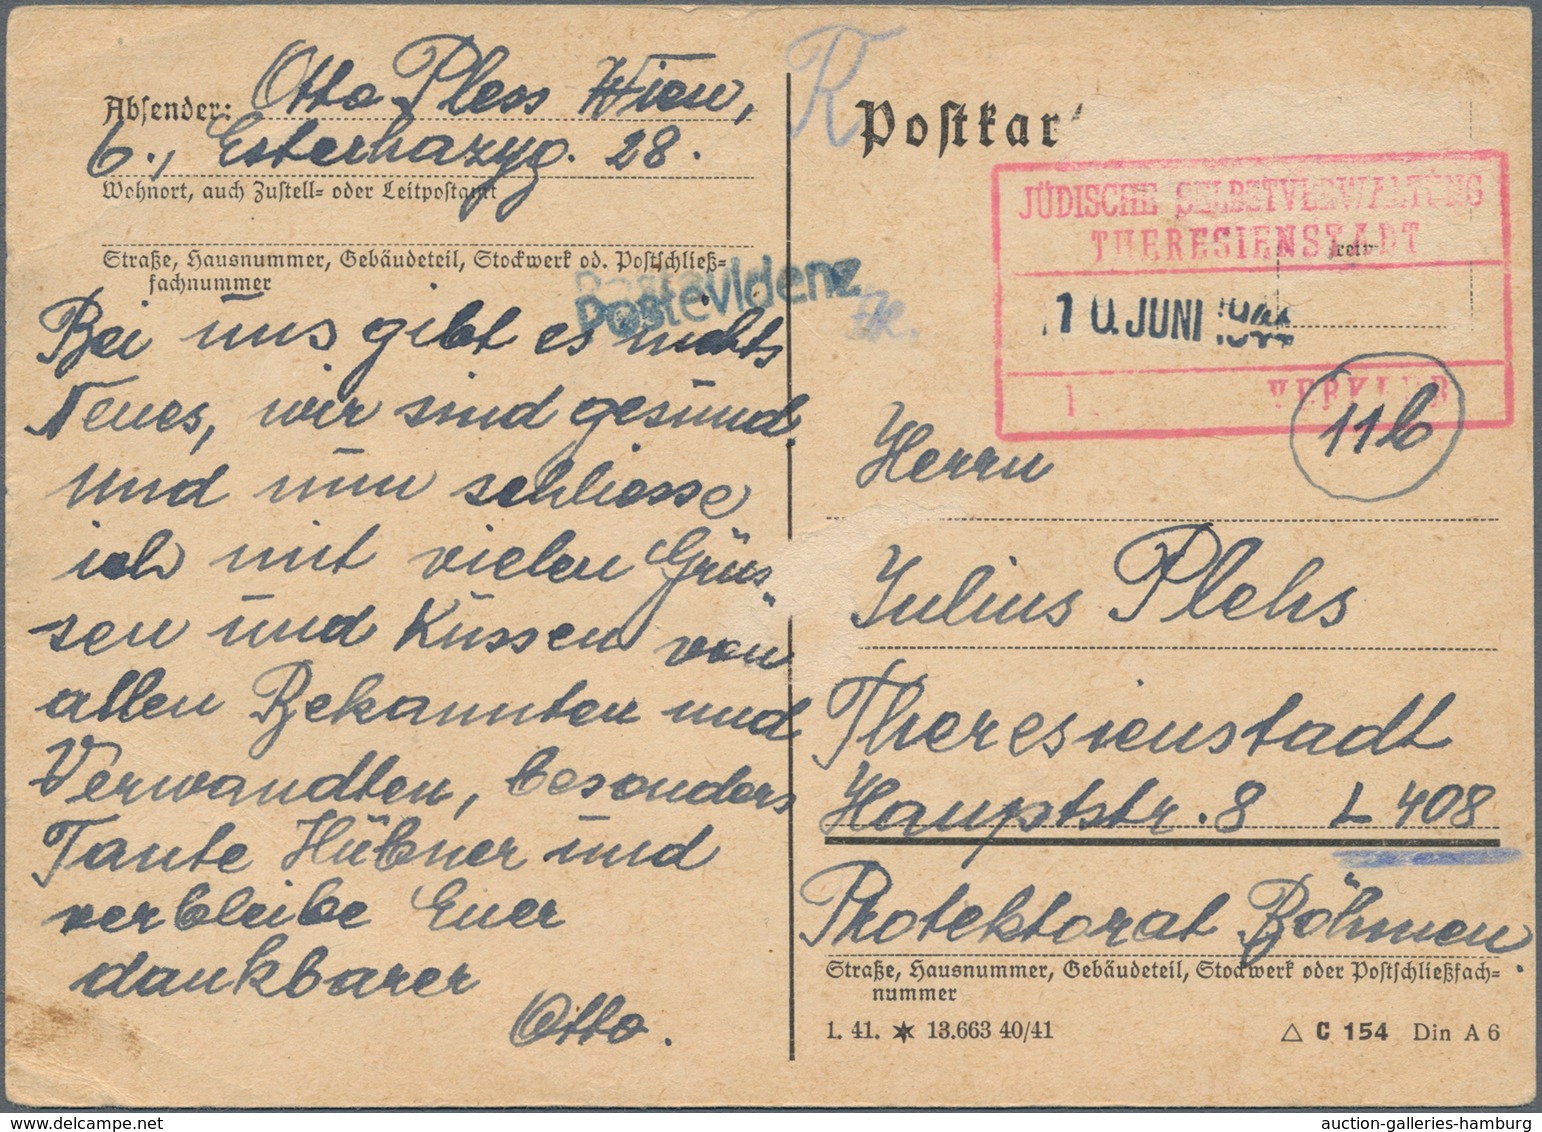 Dt. Besetzung II WK - Böhmen Und Mähren - Zulassungsmarke (Theresienstadt-Marke): 1942/1945 (ca.), K - Besetzungen 1938-45